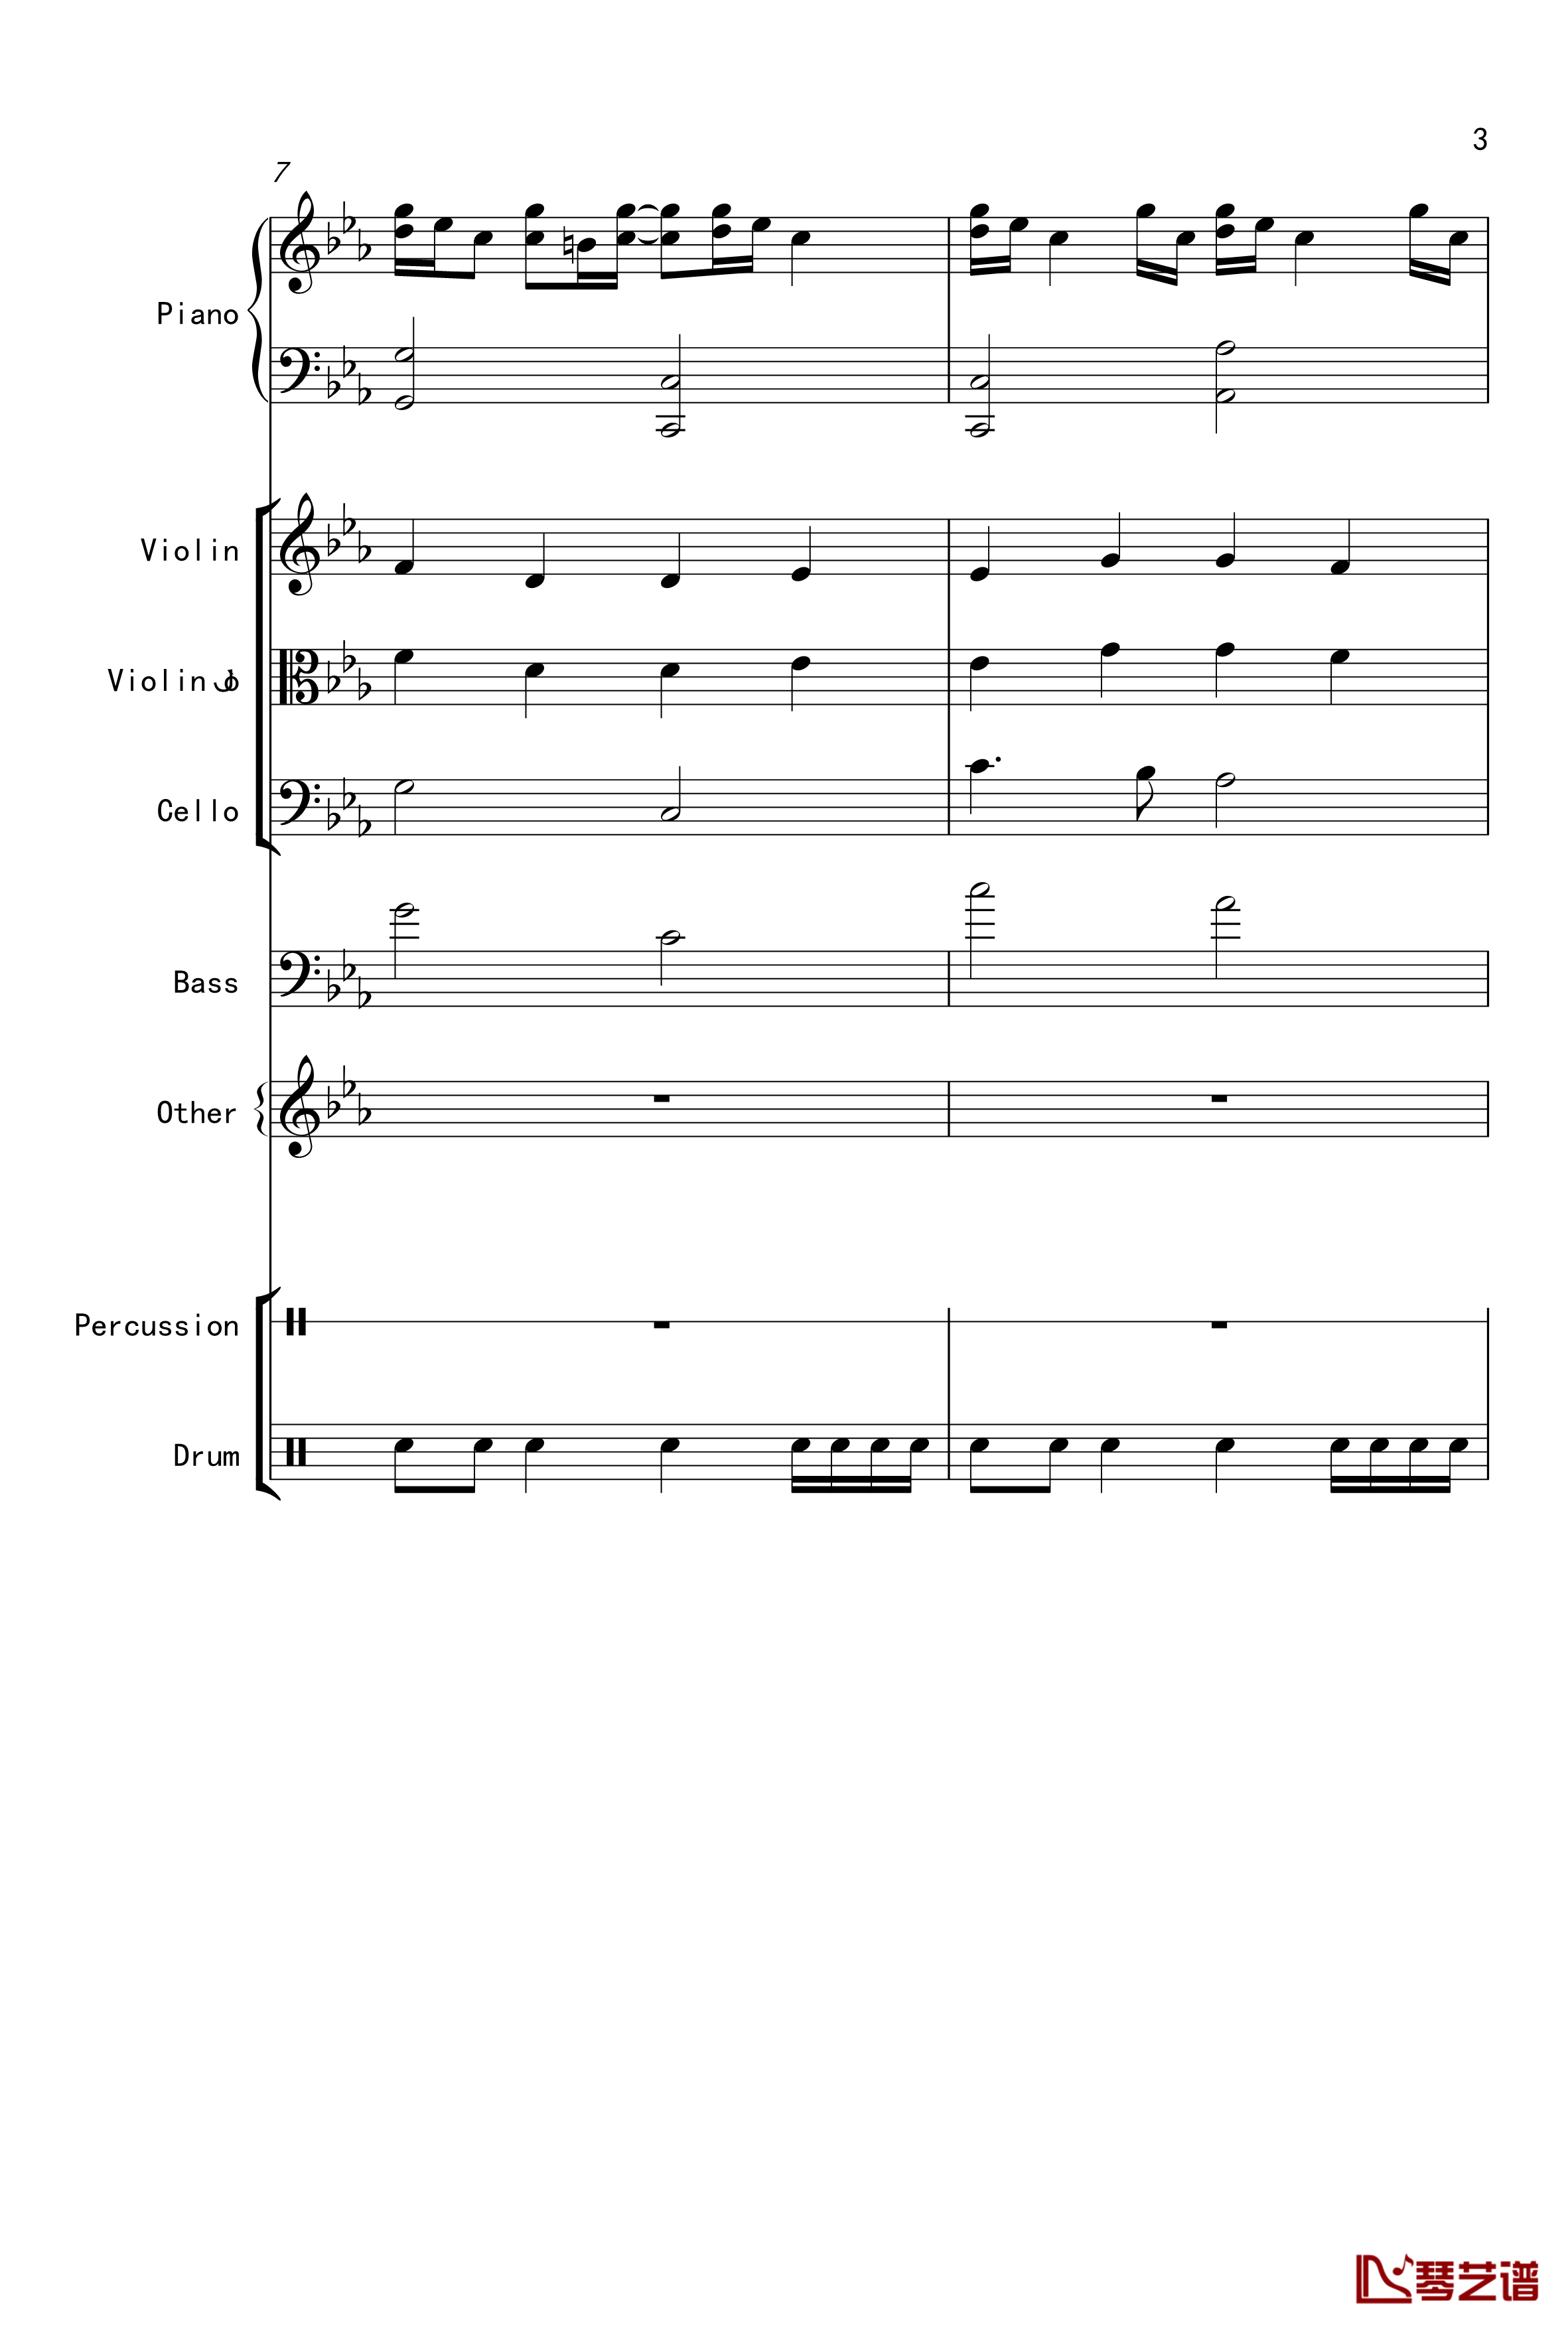 克罗地亚舞曲钢琴谱-Croatian Rhapsody-马克西姆-Maksim·Mrvica3